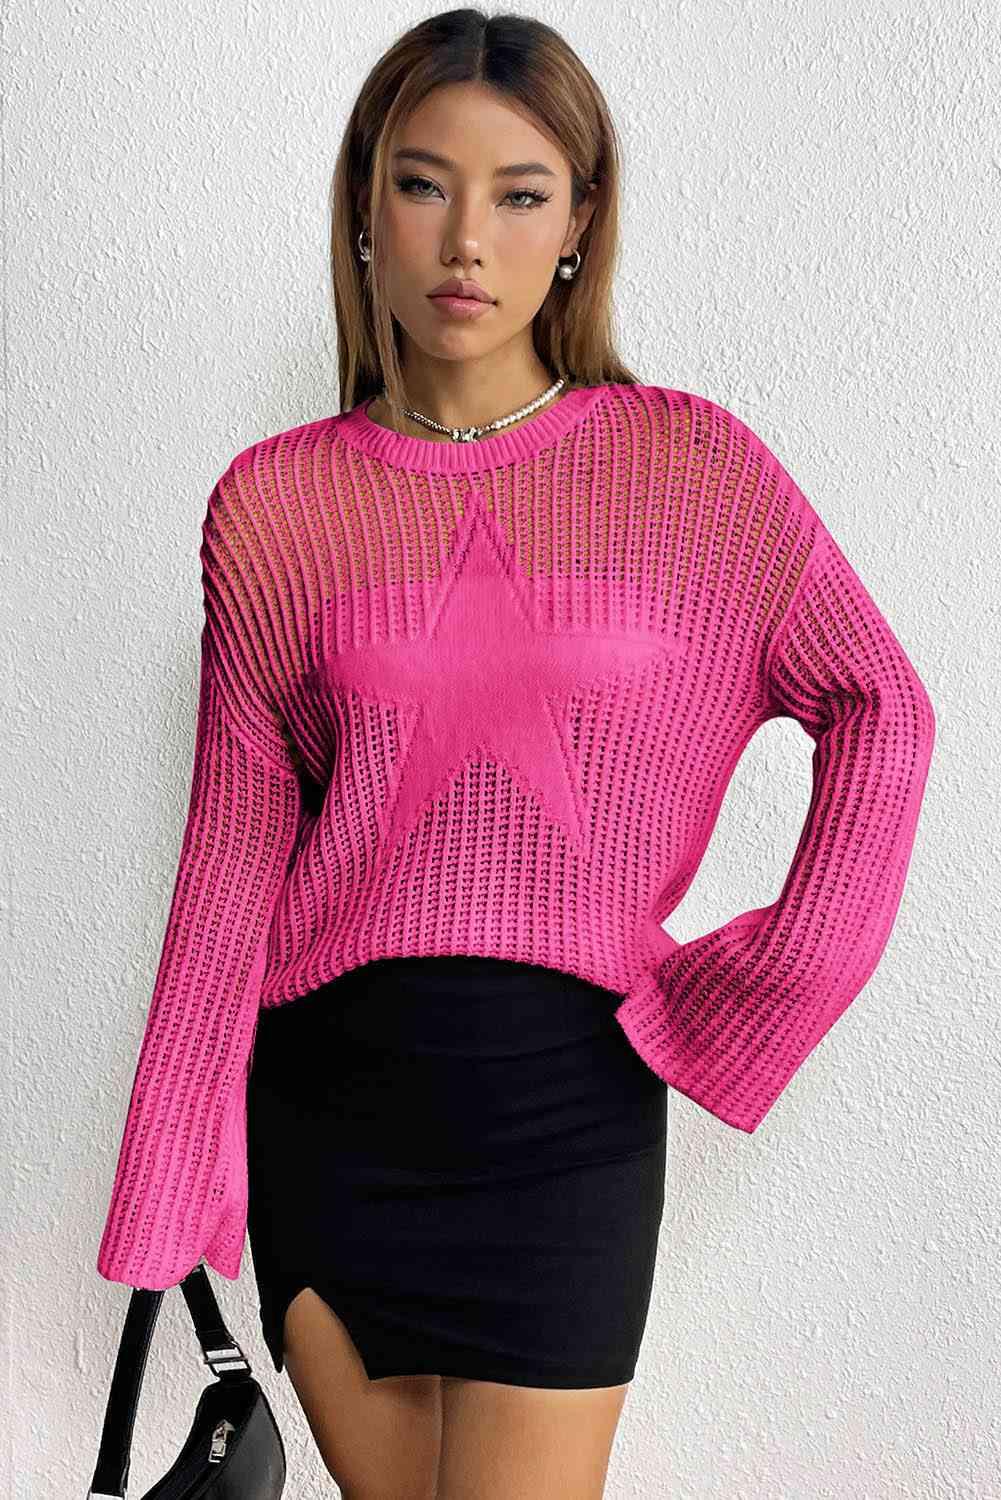 Star Rib-Knit Sweater - Vesteeto